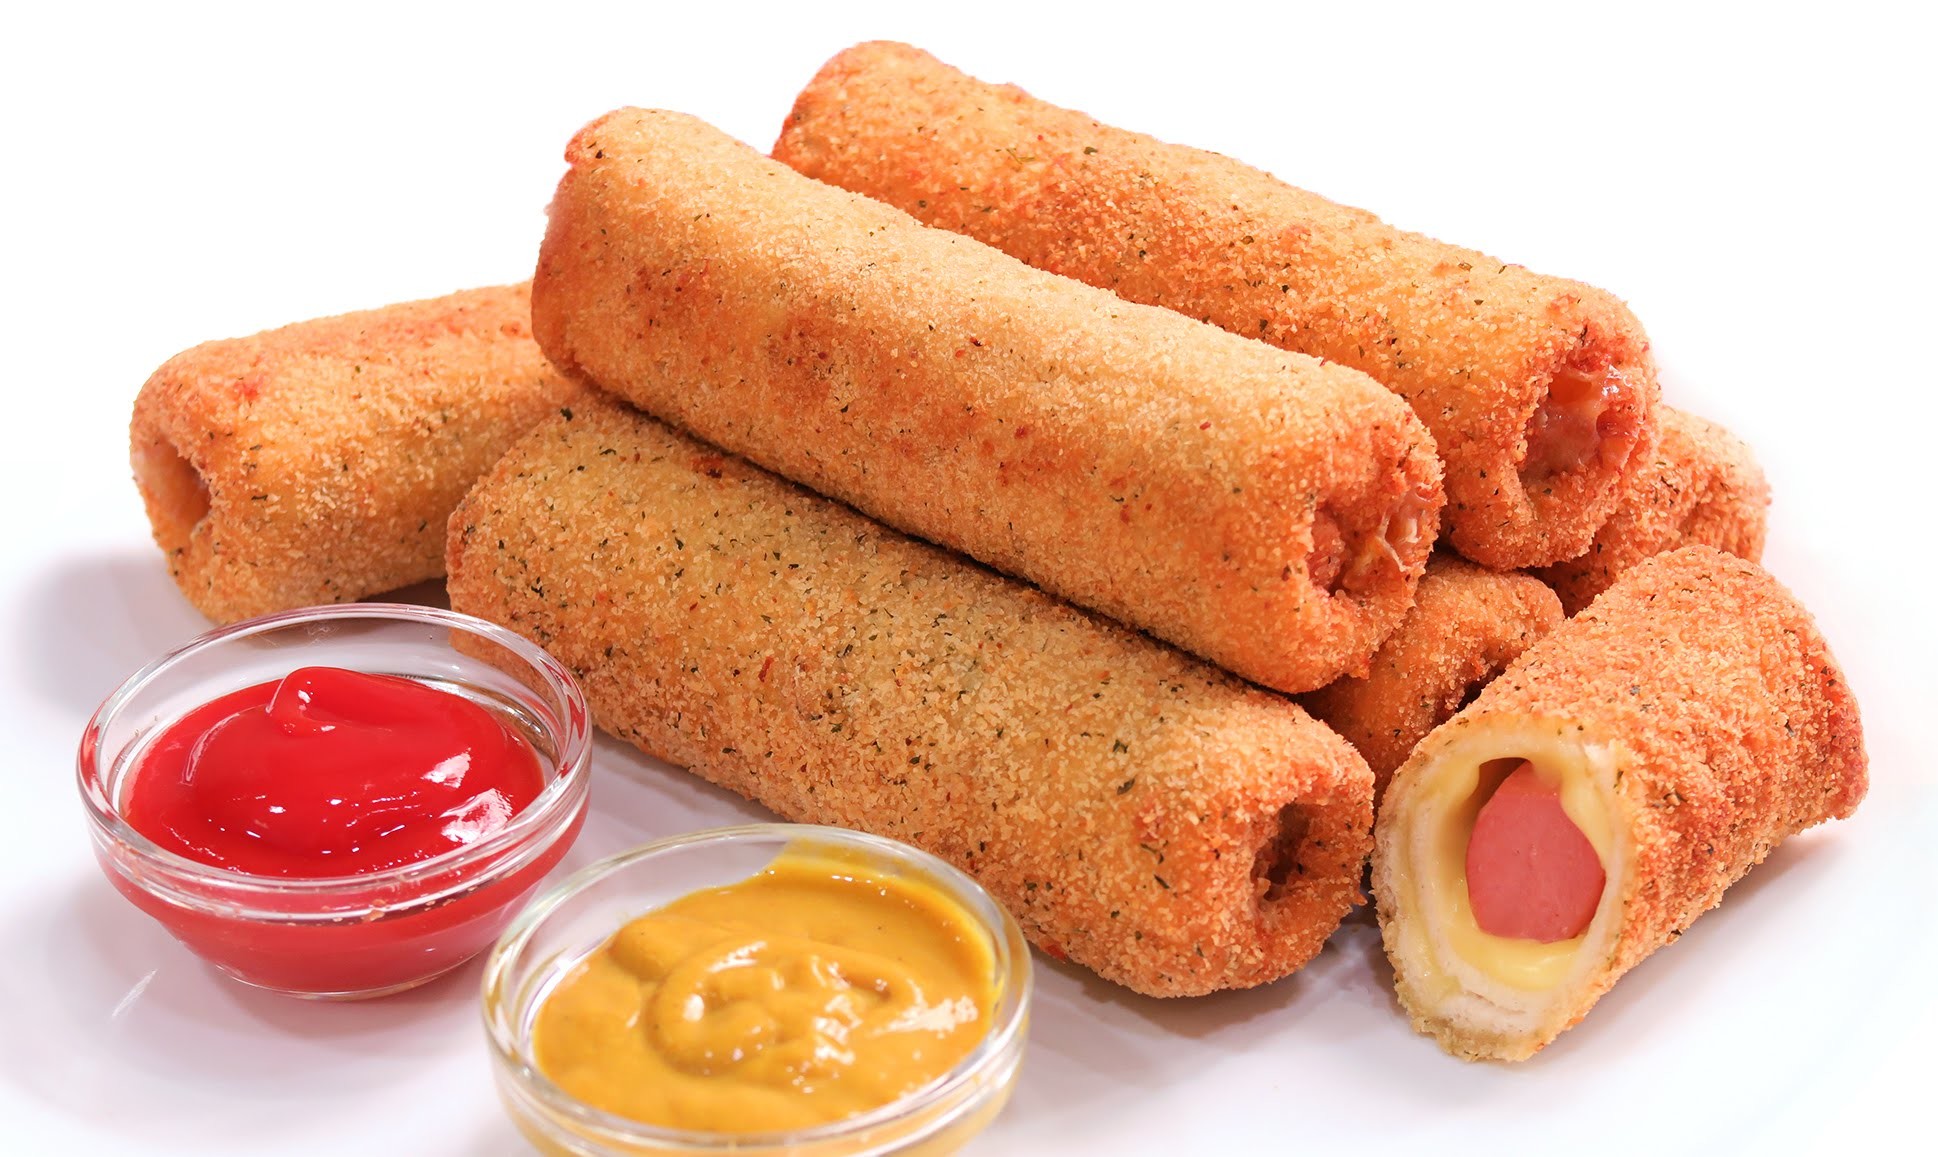 Rollitos de Salchicha y Queso | Hot Dog súper deliciosos!